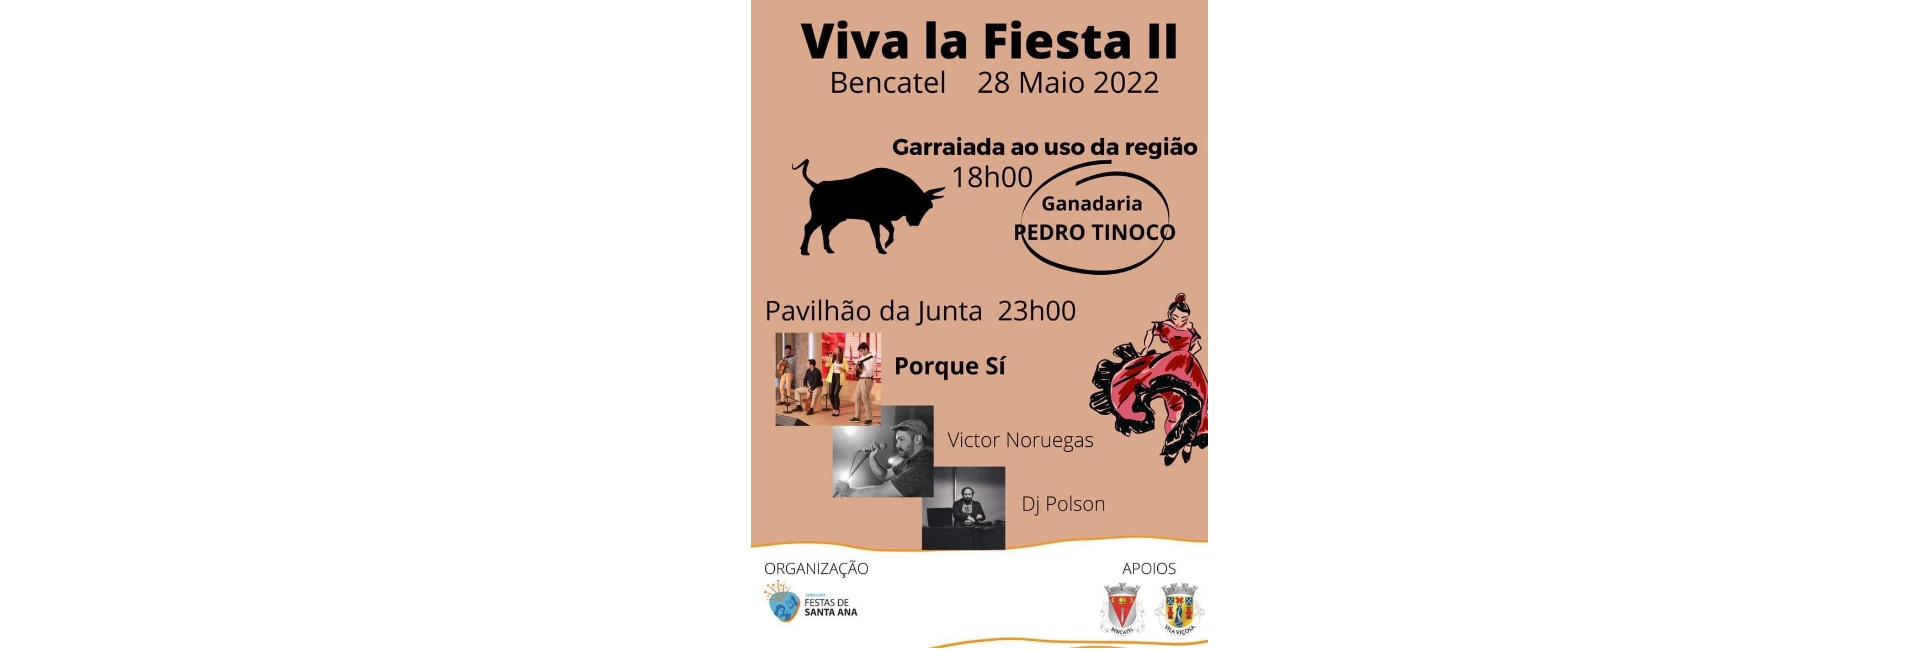 (Português) Bencatel – Viva la Fiesta II – 28 Maio